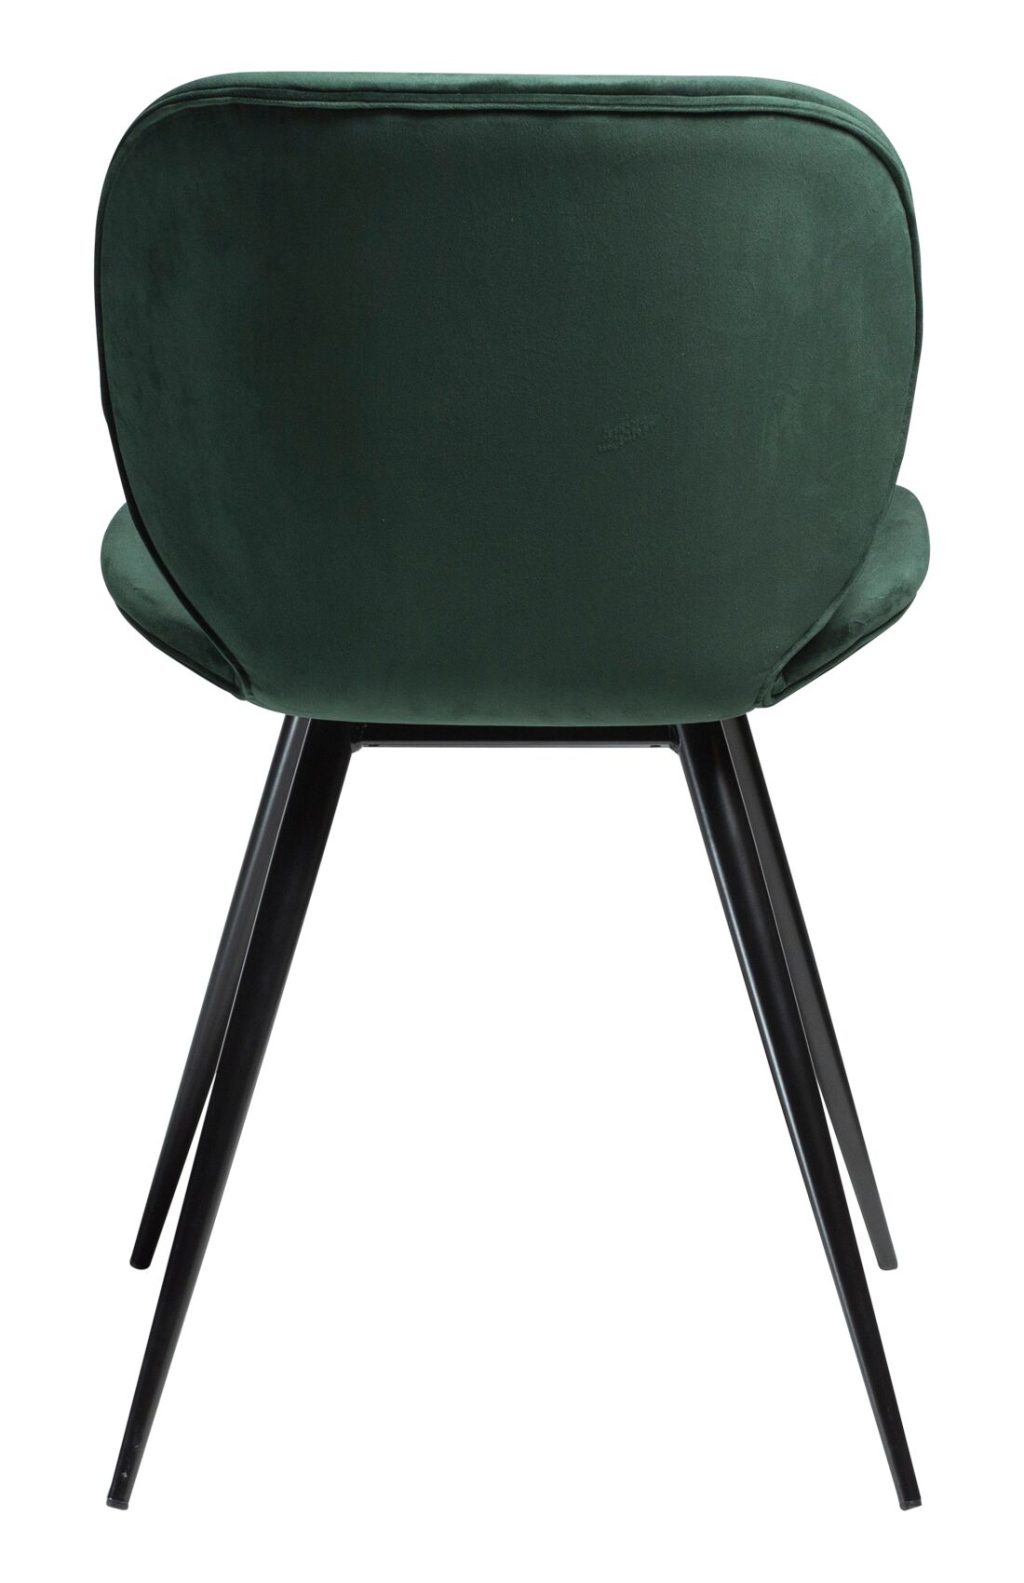 Cloud chair - emerald green velvet